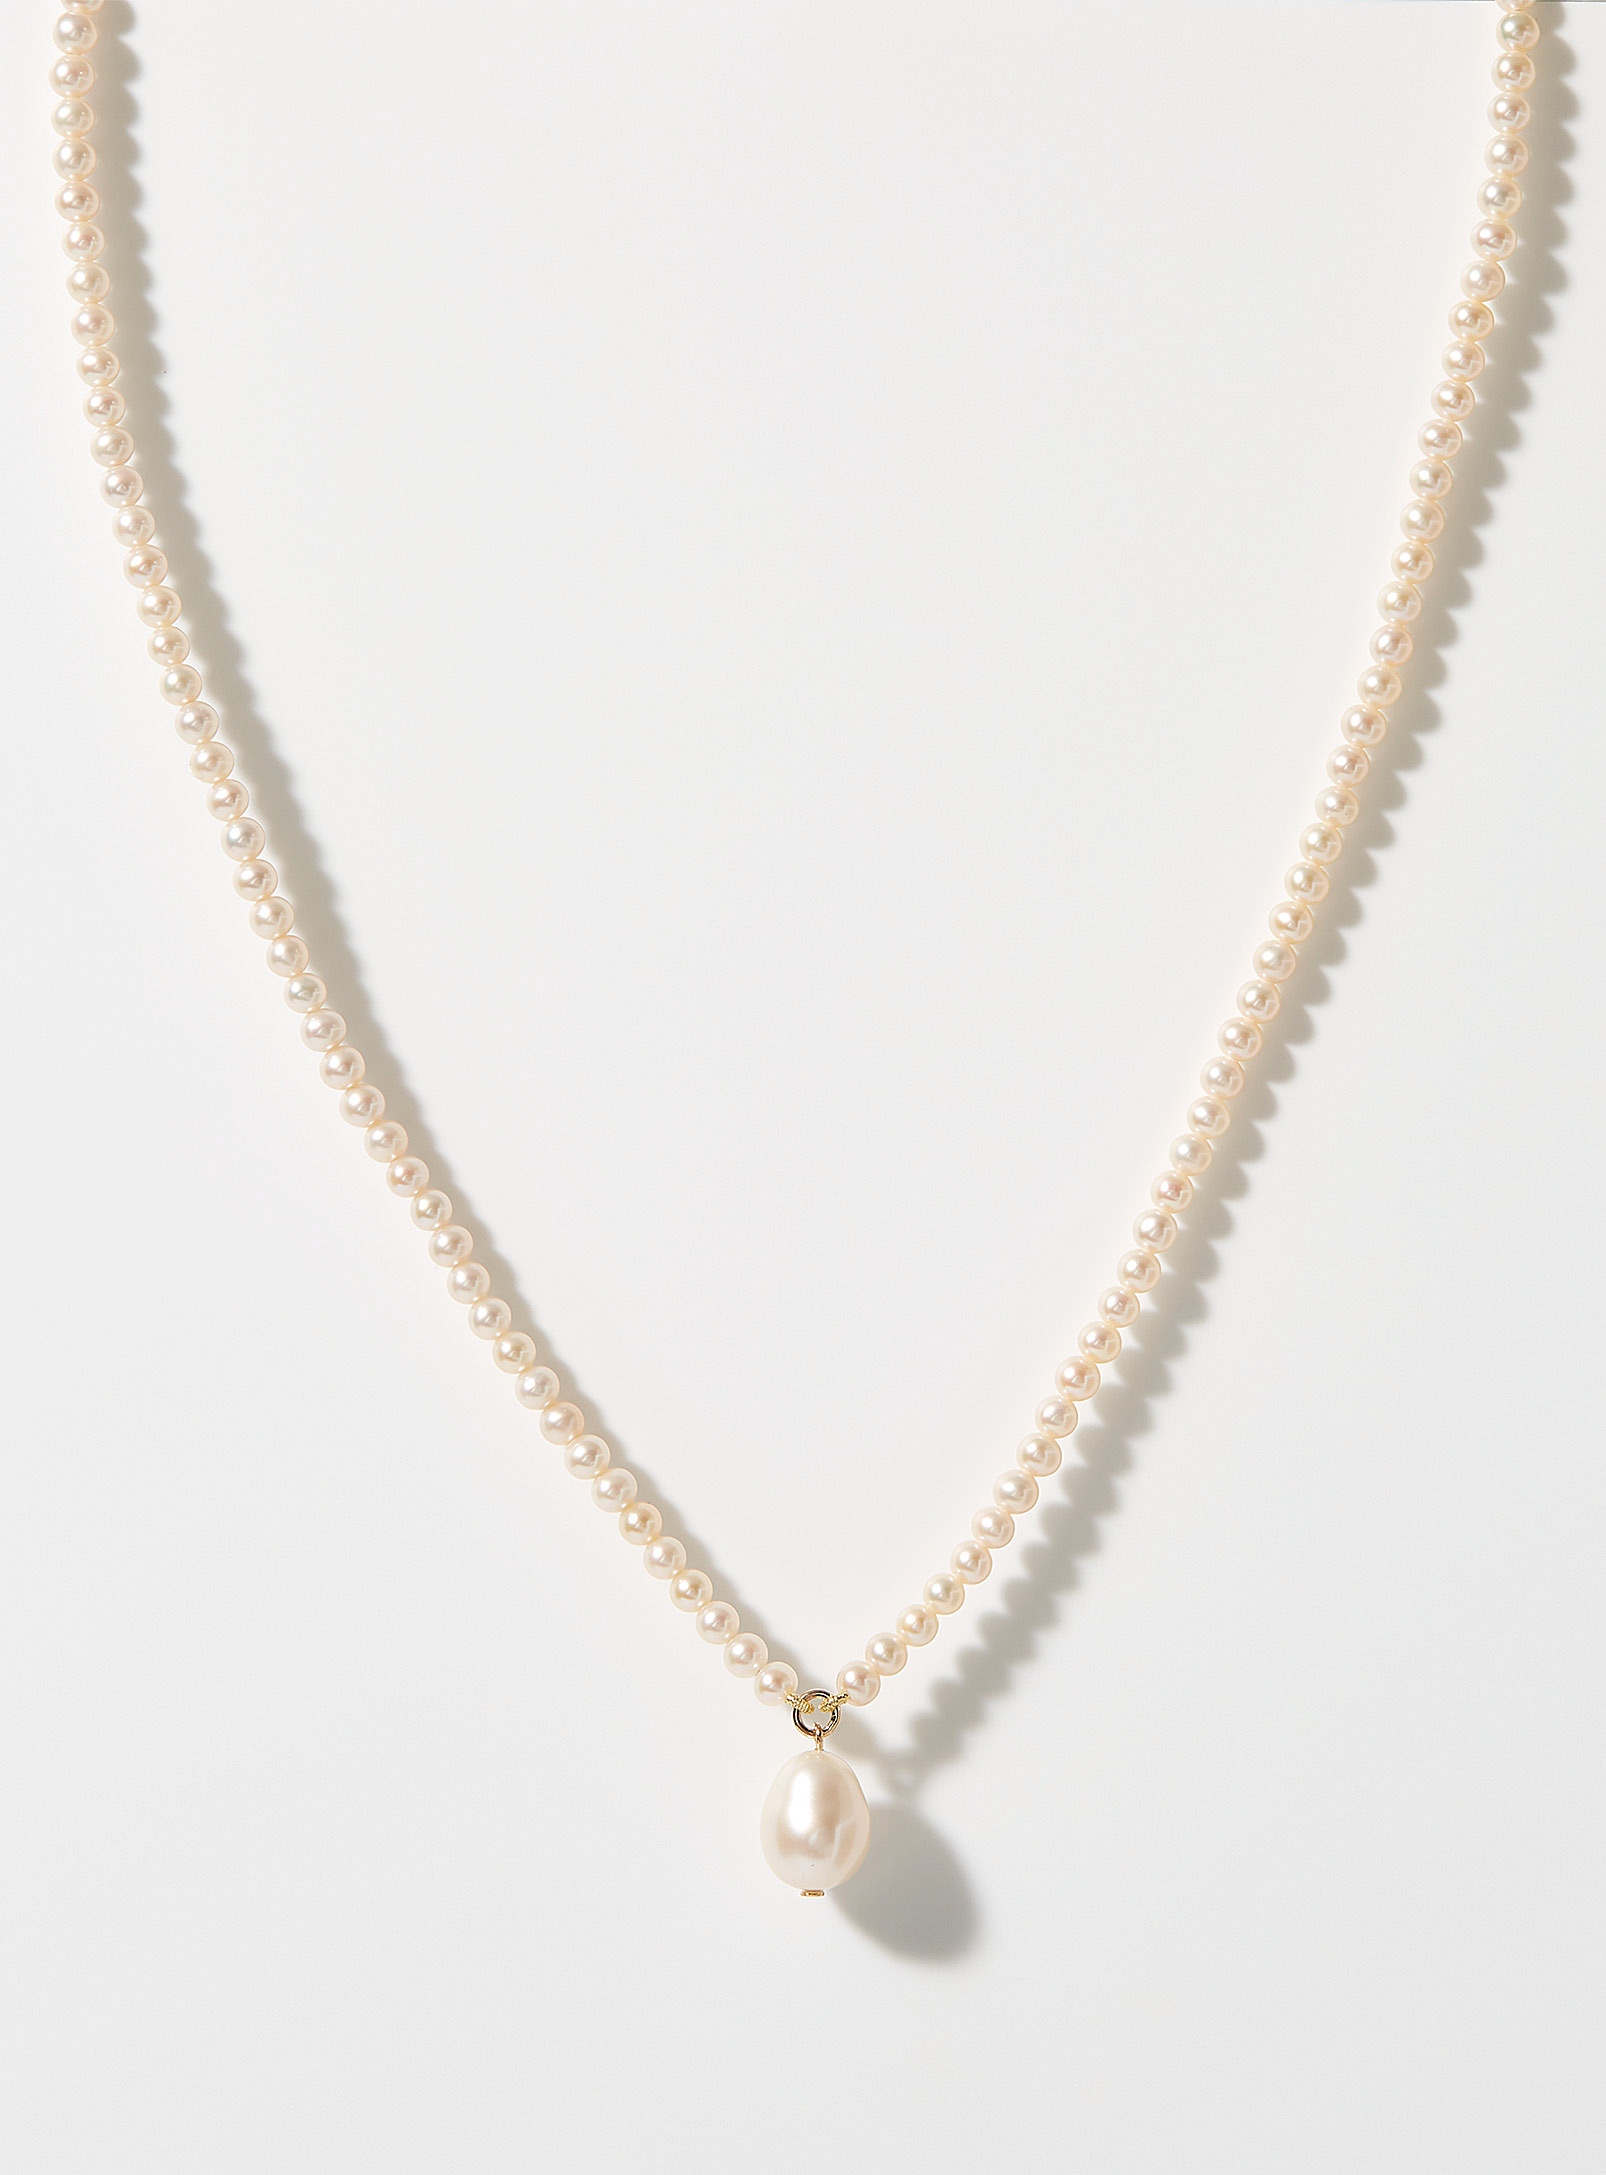 Poppy Finch - Women's Pearl necklace